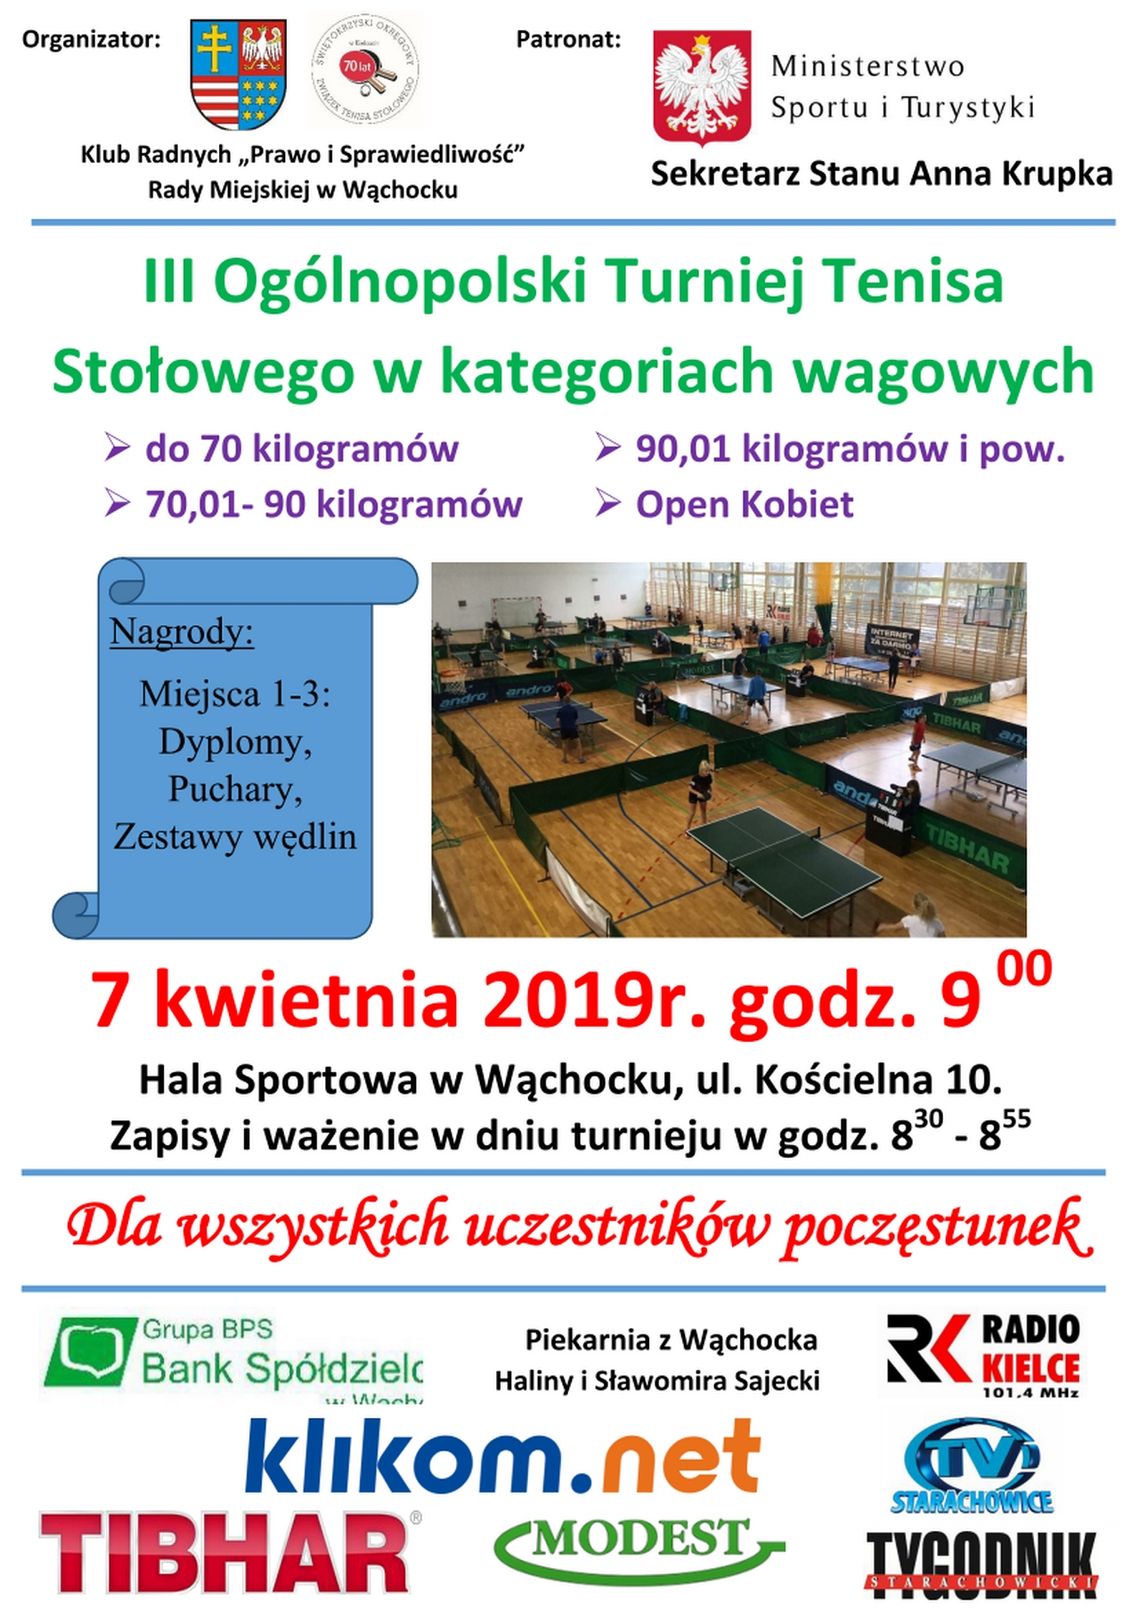 III Ogólnopolski Turniej tenisa Stołowego w Wąchocku